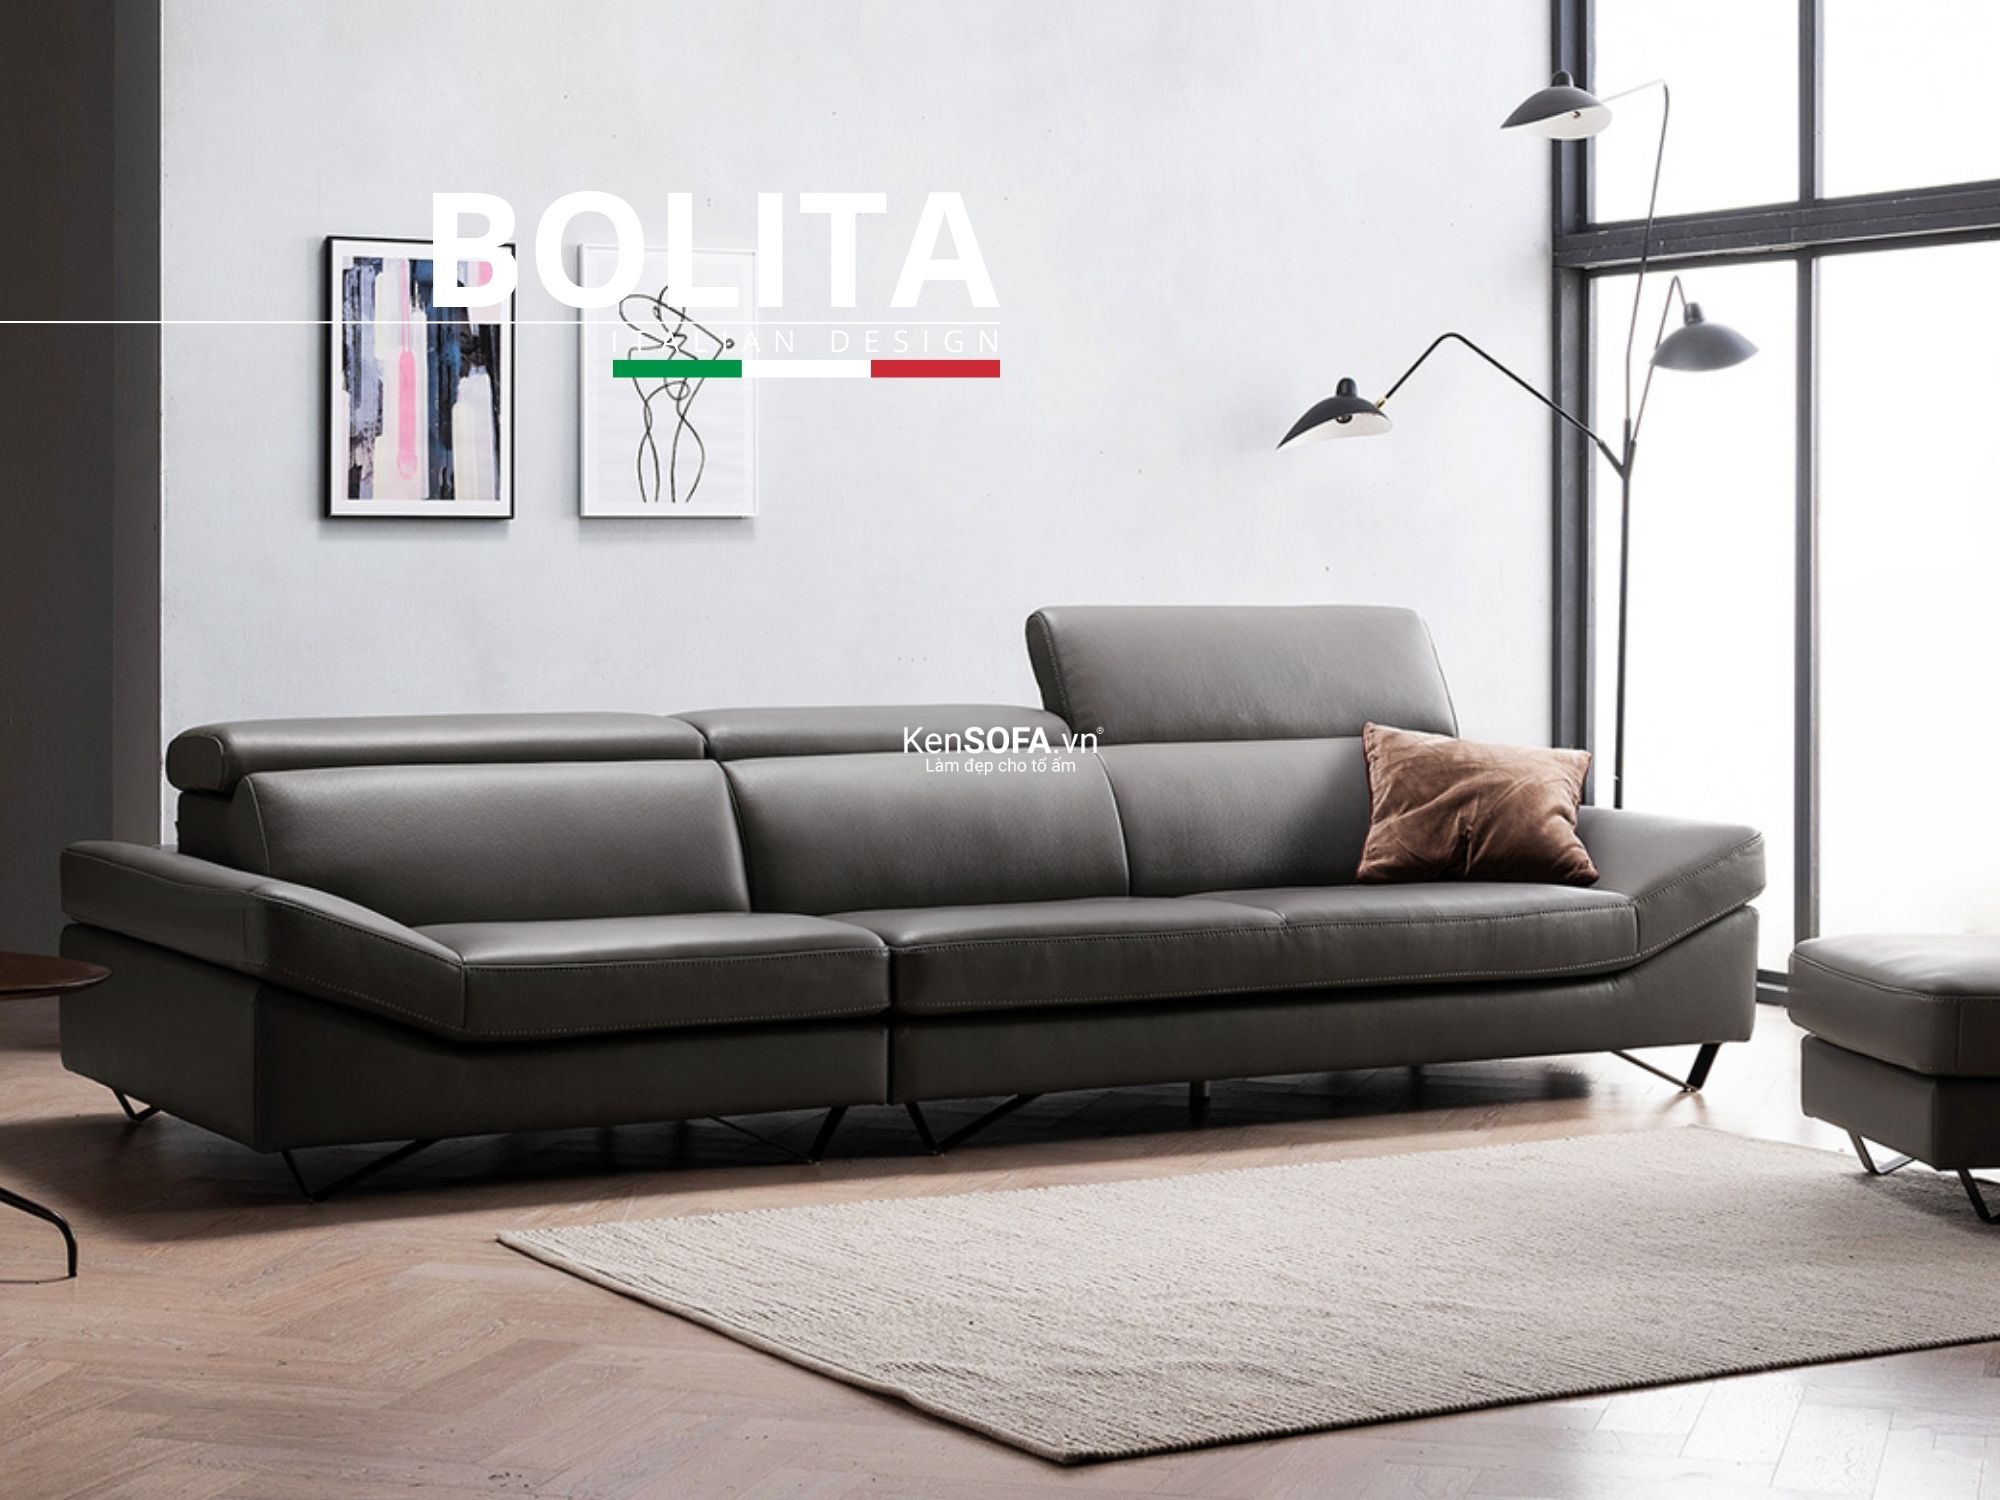 Sofa băng da cao cấp CC19 Bolita da Hàn Quốc nhập khẩu